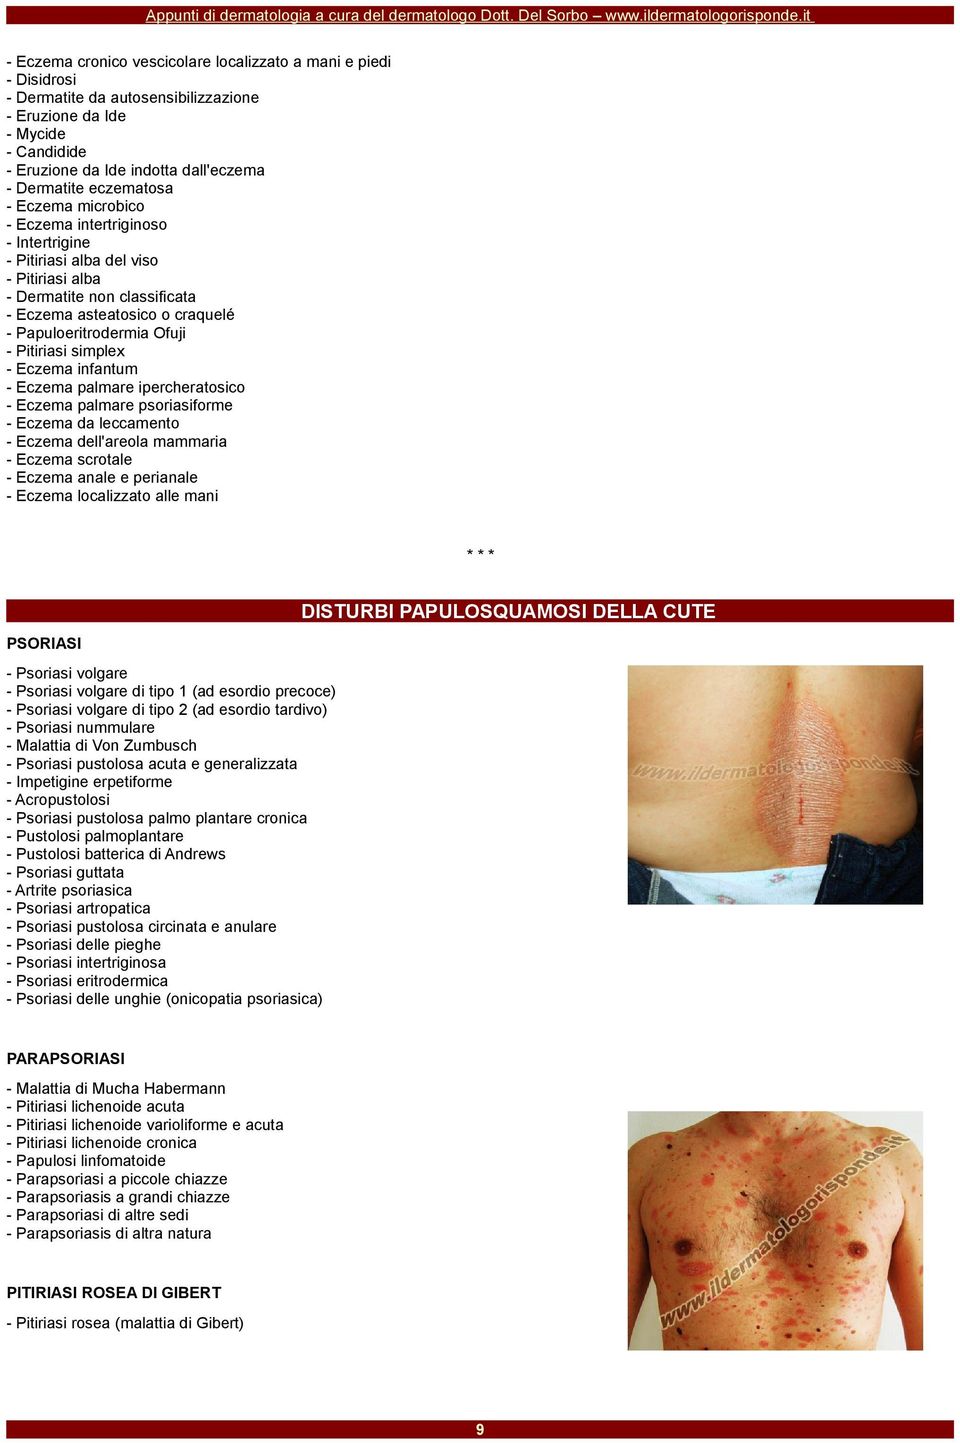 - Pitiriasi simplex - Eczema infantum - Eczema palmare ipercheratosico - Eczema palmare psoriasiforme - Eczema da leccamento - Eczema dell'areola mammaria - Eczema scrotale - Eczema anale e perianale